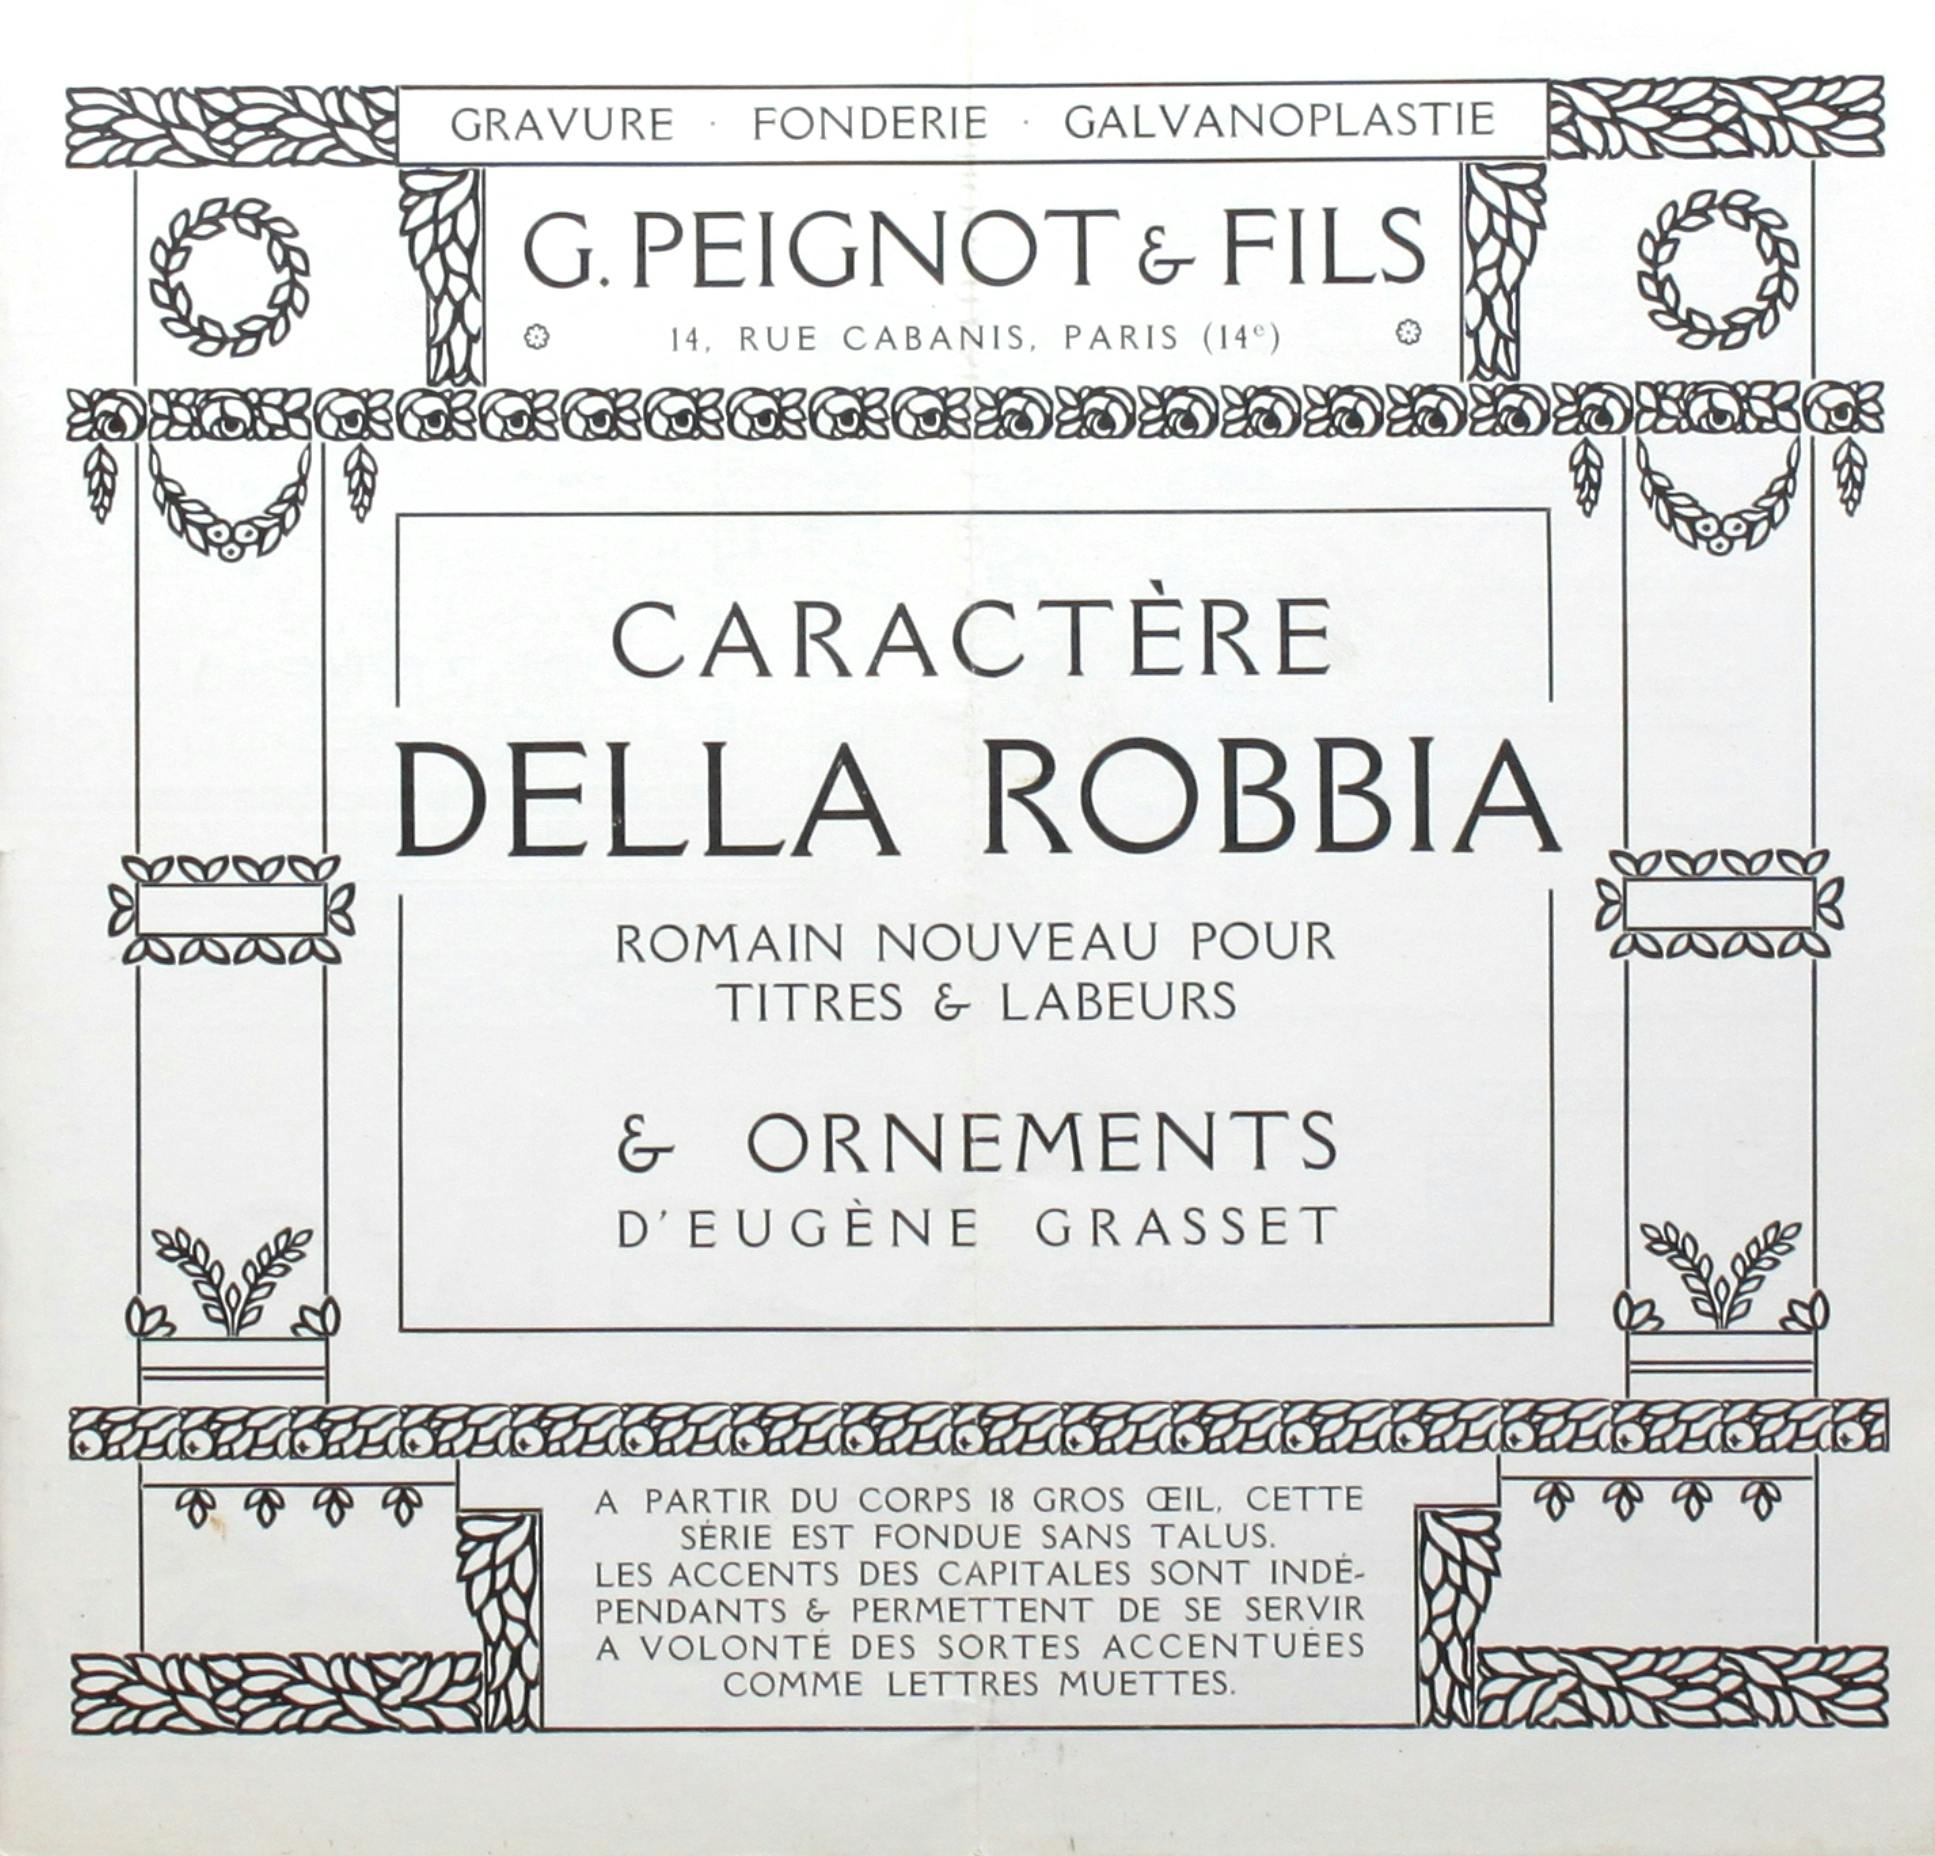 G. Peignot & Fils’ “Della Robbia”